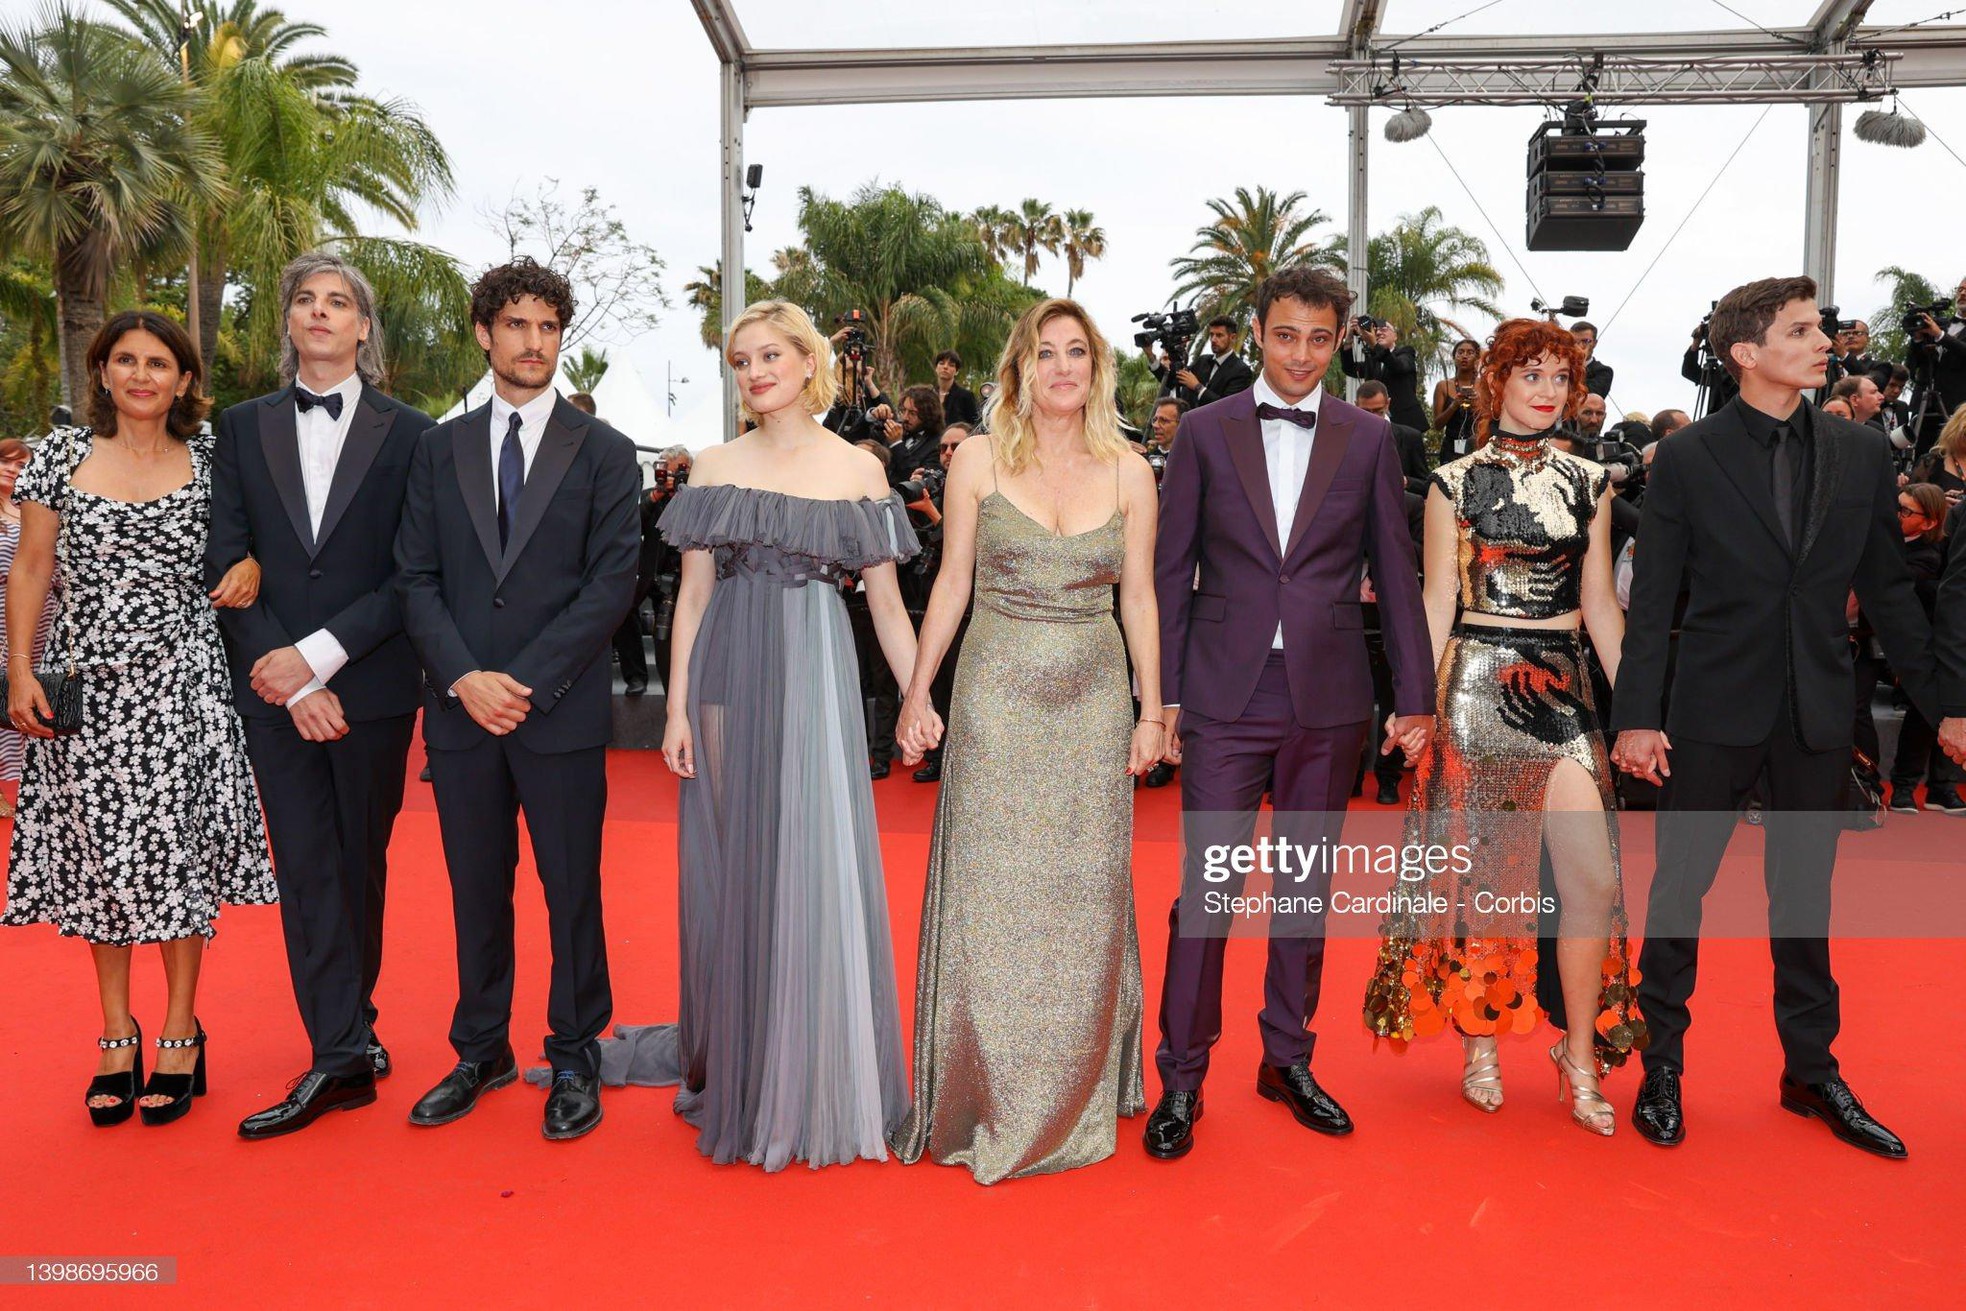 Cannes ngày 6: Sharon Stone cởi váy trên thảm đỏ, hai người đẹp gặp sự cố 'lộ hàng' kém duyên - Ảnh 7.